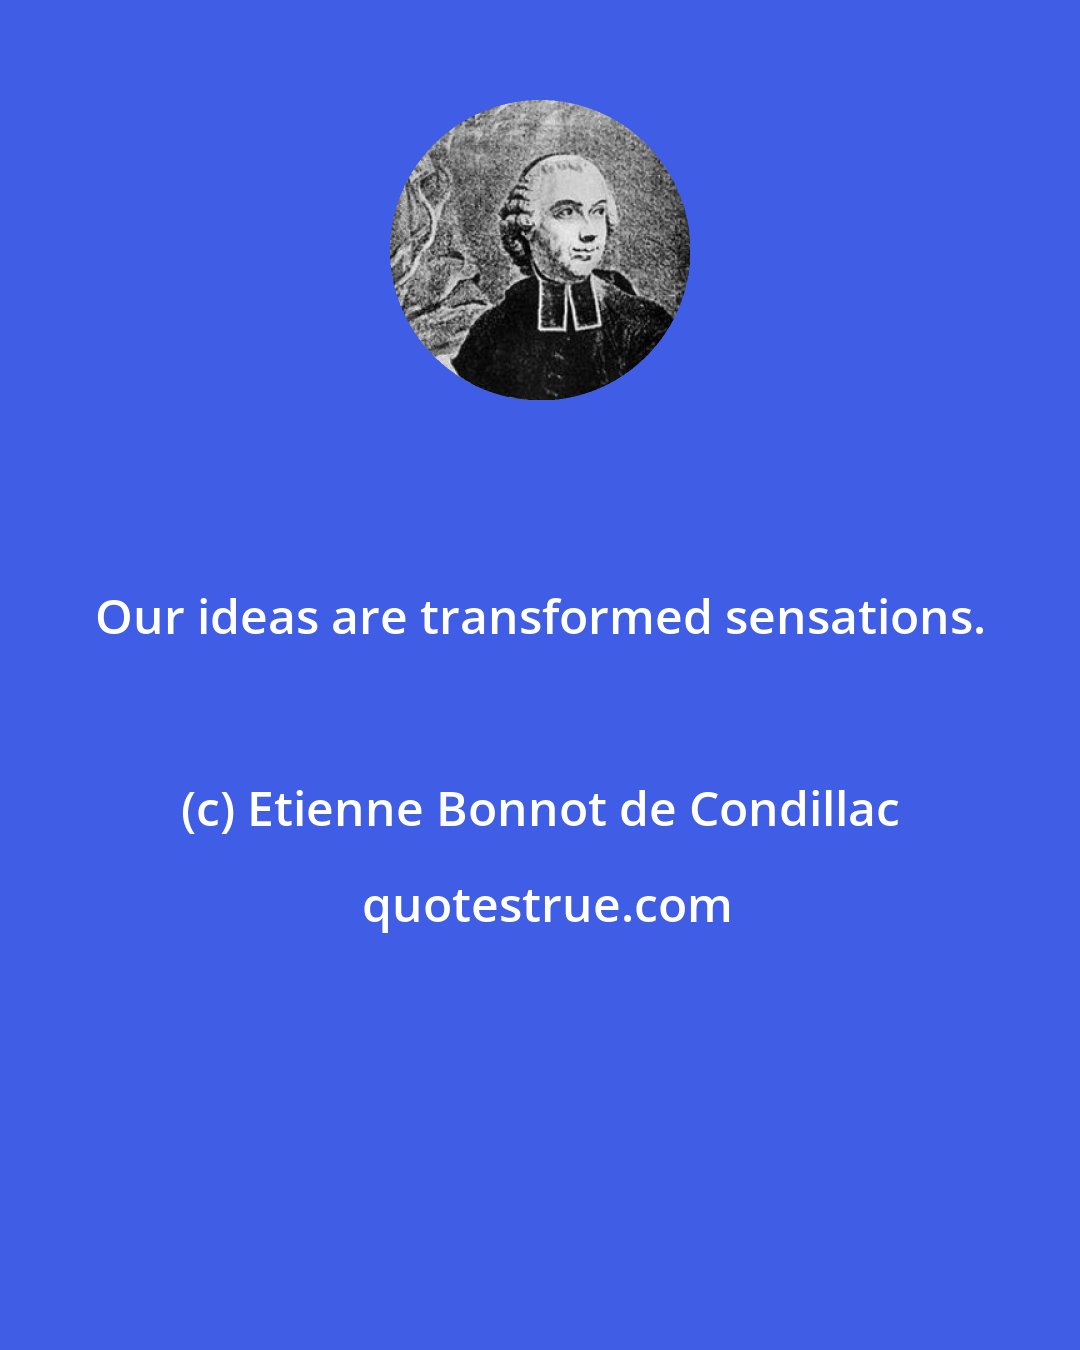 Etienne Bonnot de Condillac: Our ideas are transformed sensations.